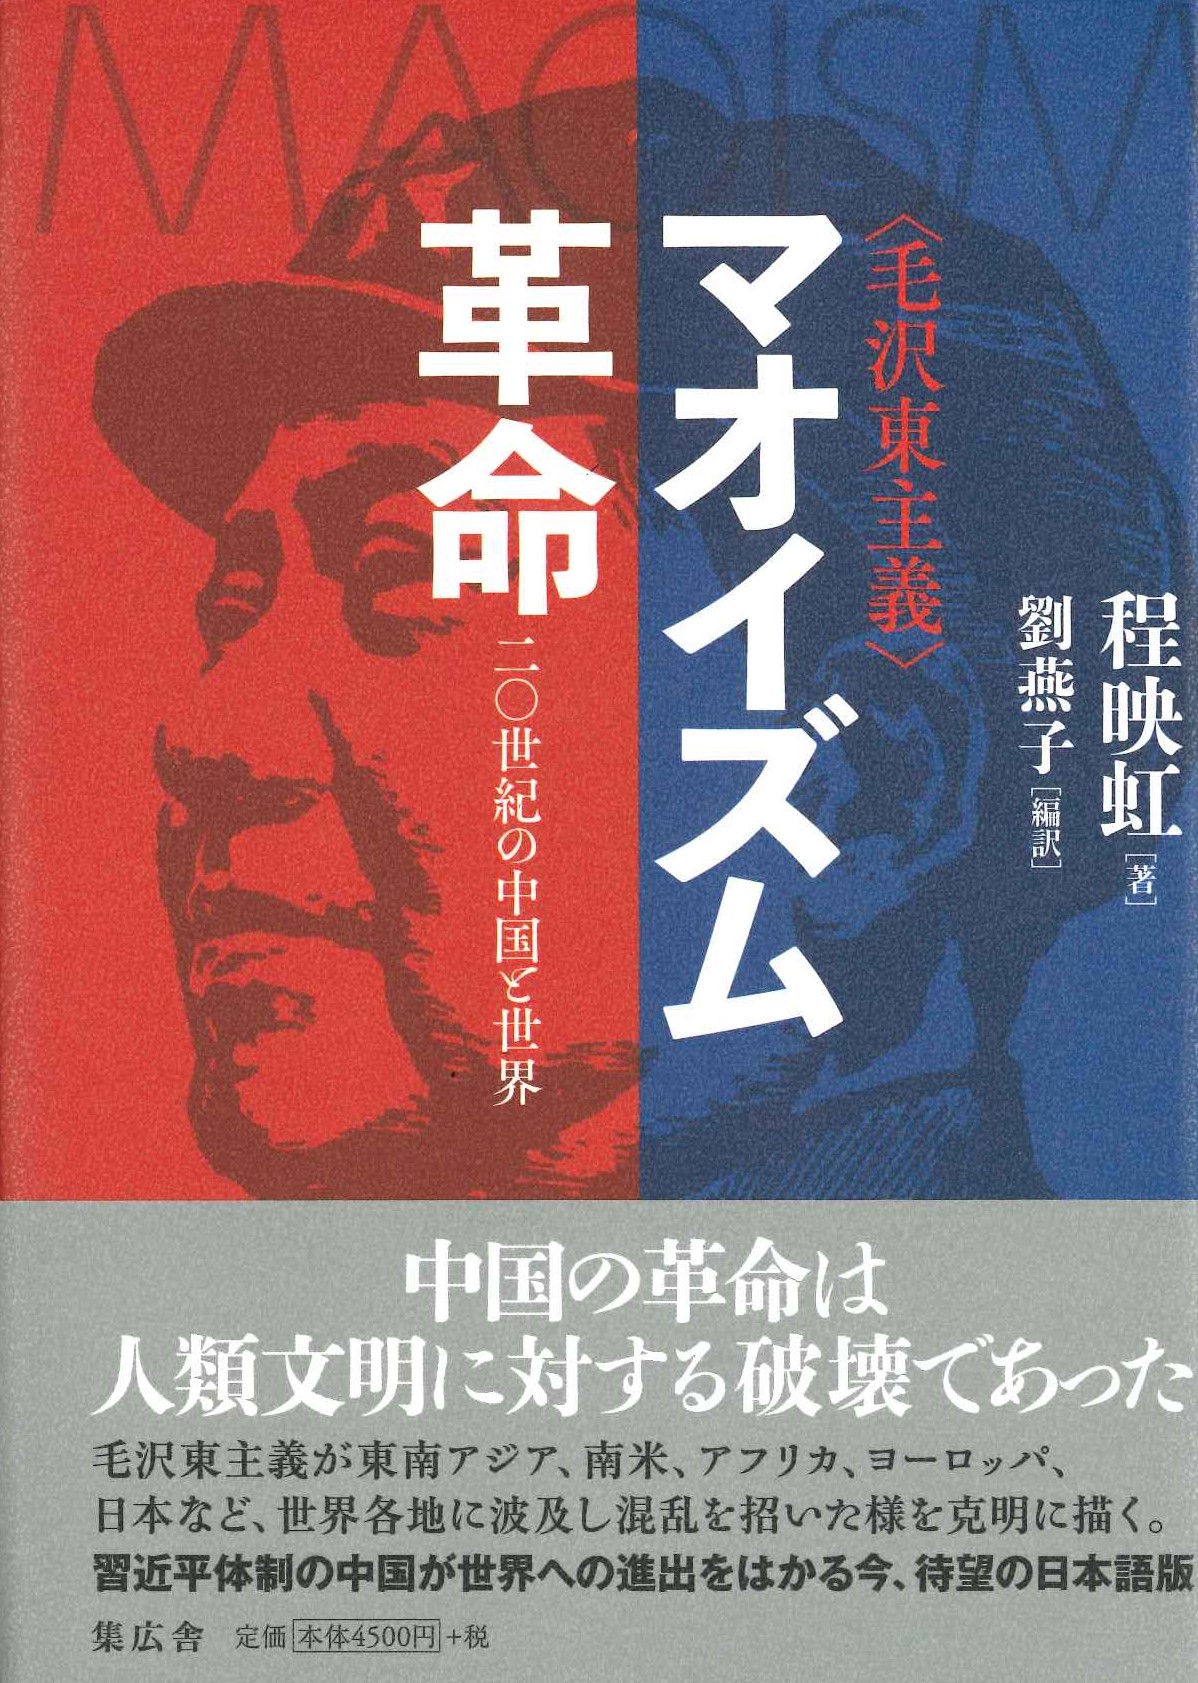 マオイズム(毛沢東主義)革命 二〇世紀の中国と世界